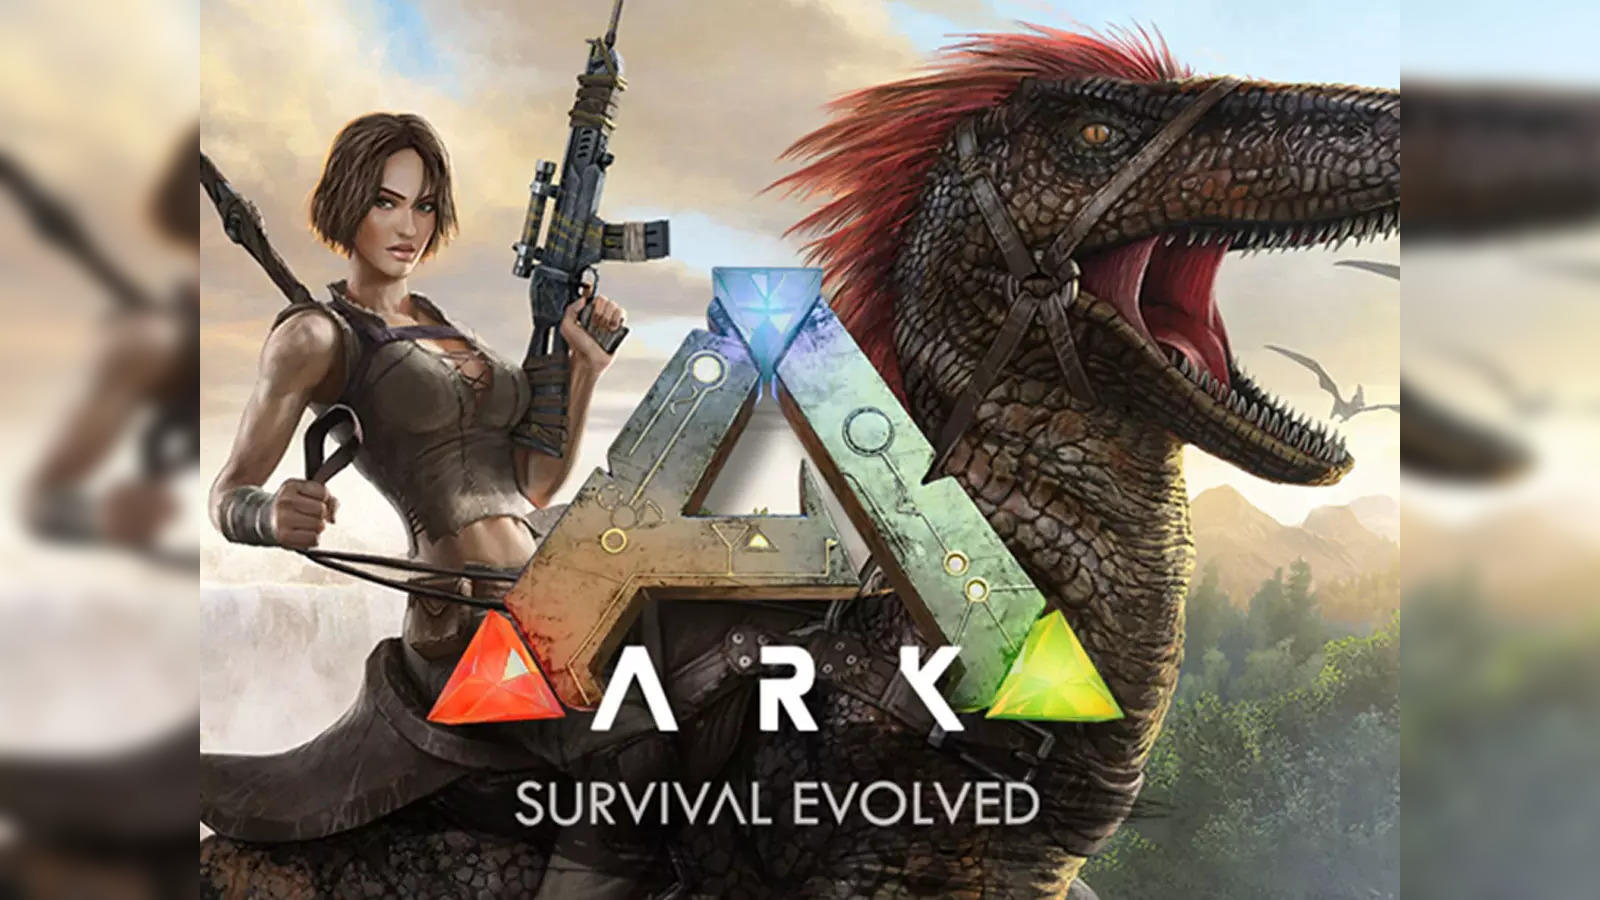 ΛRK: Survival Evolved Free Download from Epic Games